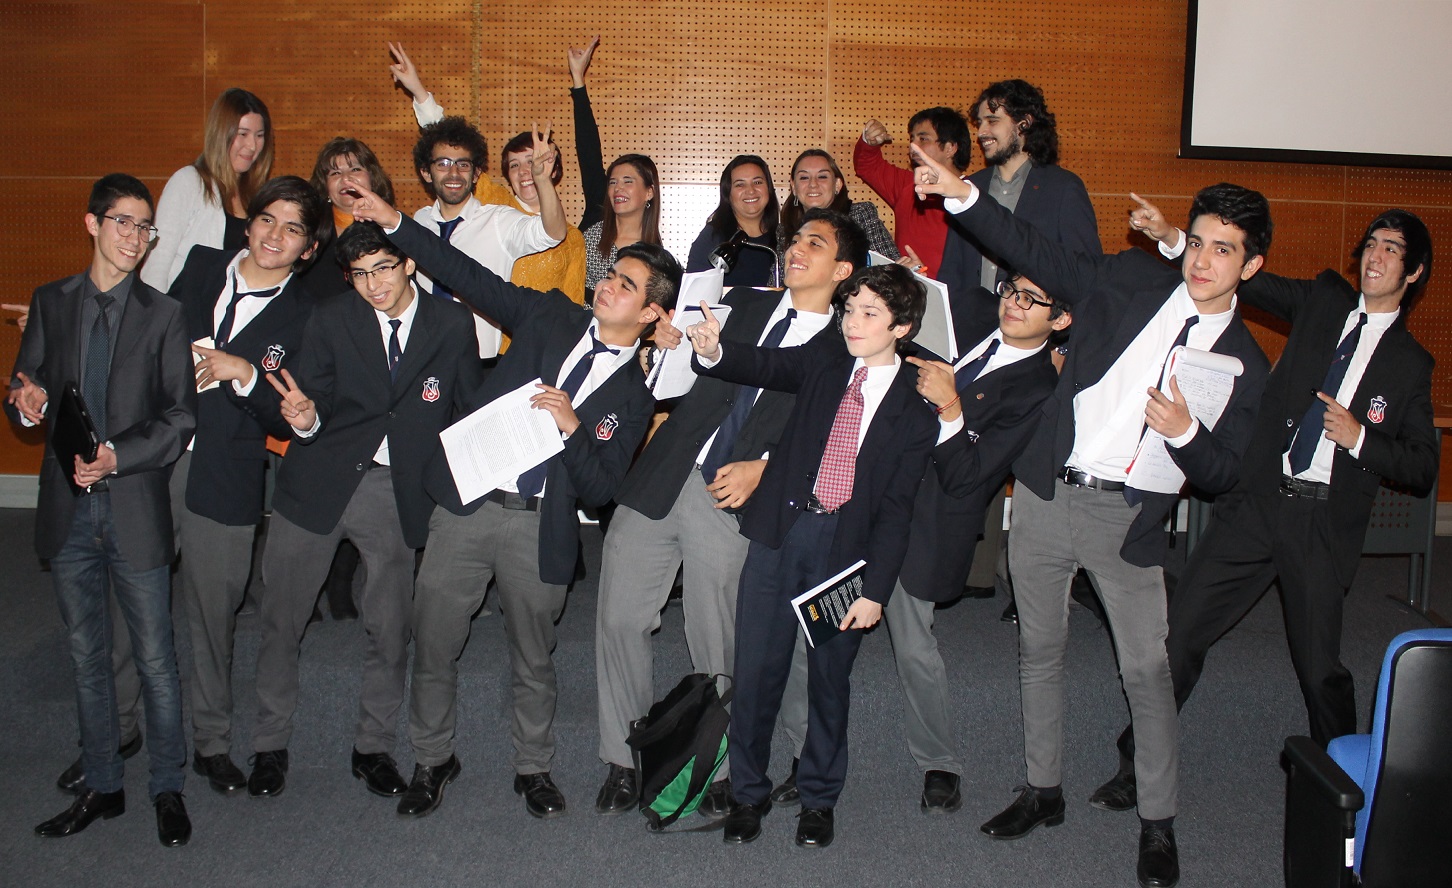 Alumnos de la Academia de Debate del Instituto Nacional participaron en juicios simulados, supervisados por defensores juveniles.